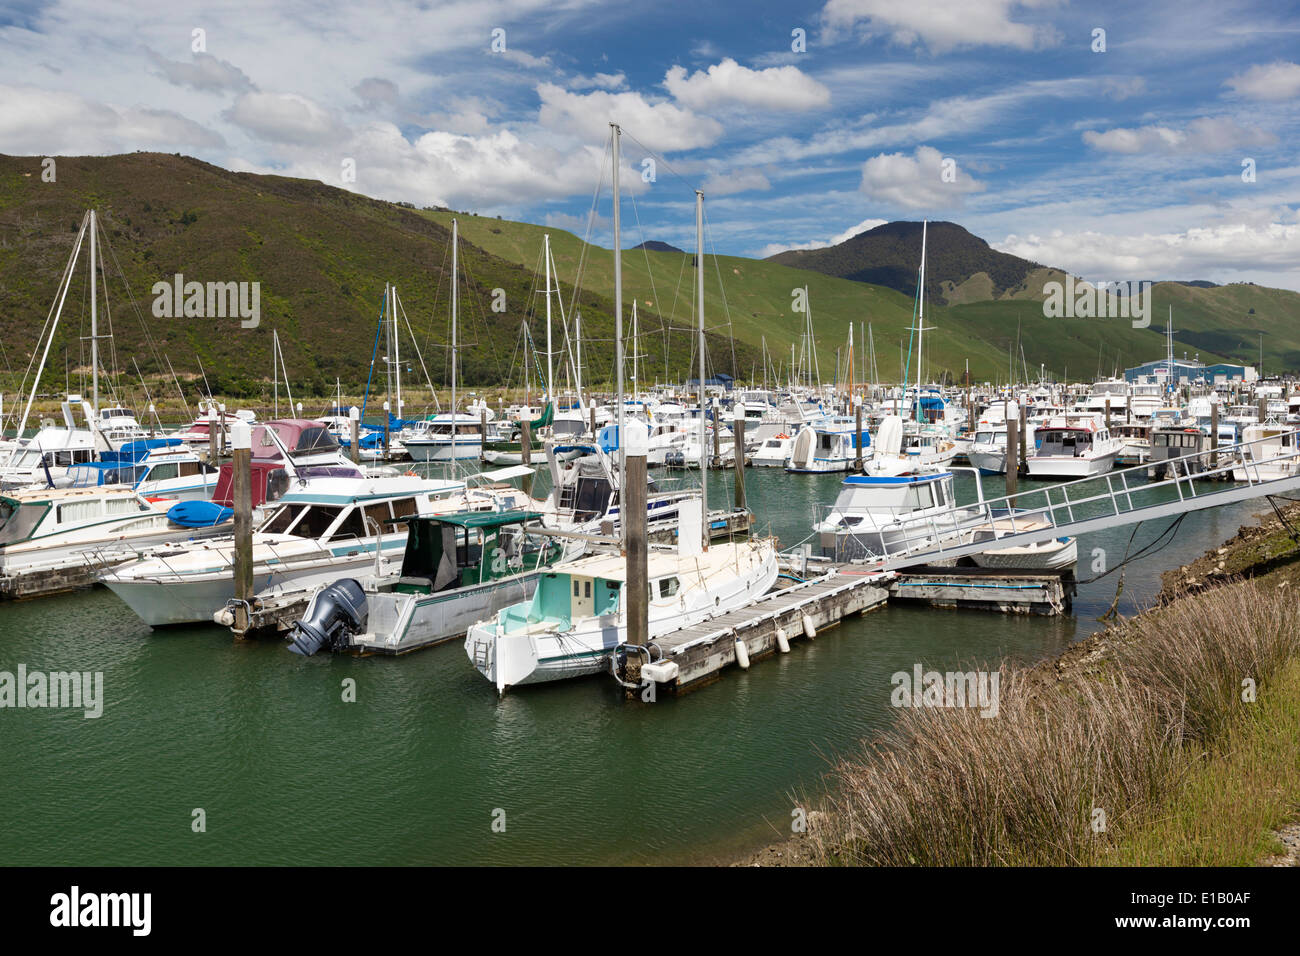 Havelock marina, Havelock, région de Marlborough, île du Sud, Nouvelle-Zélande, Pacifique Sud Banque D'Images